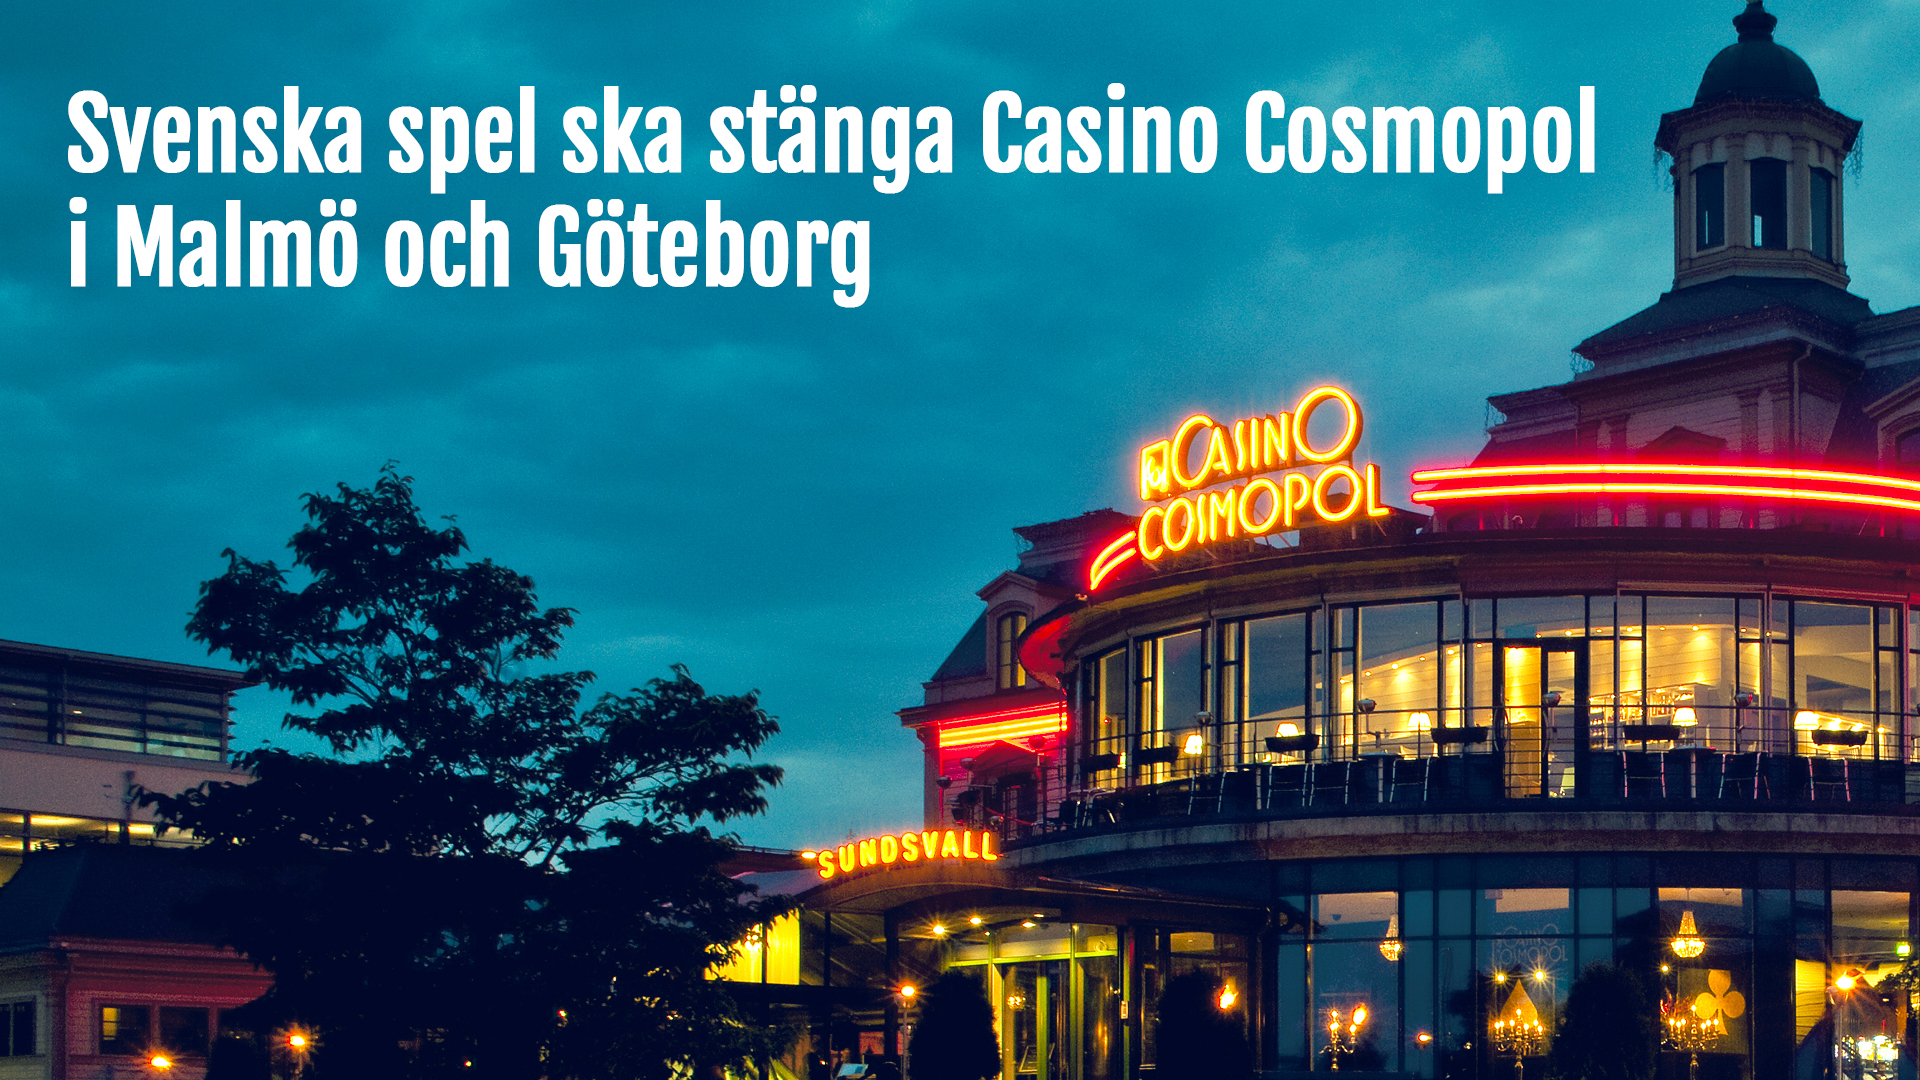 Casino Cosmopol stänger i Malmö och Göteborg